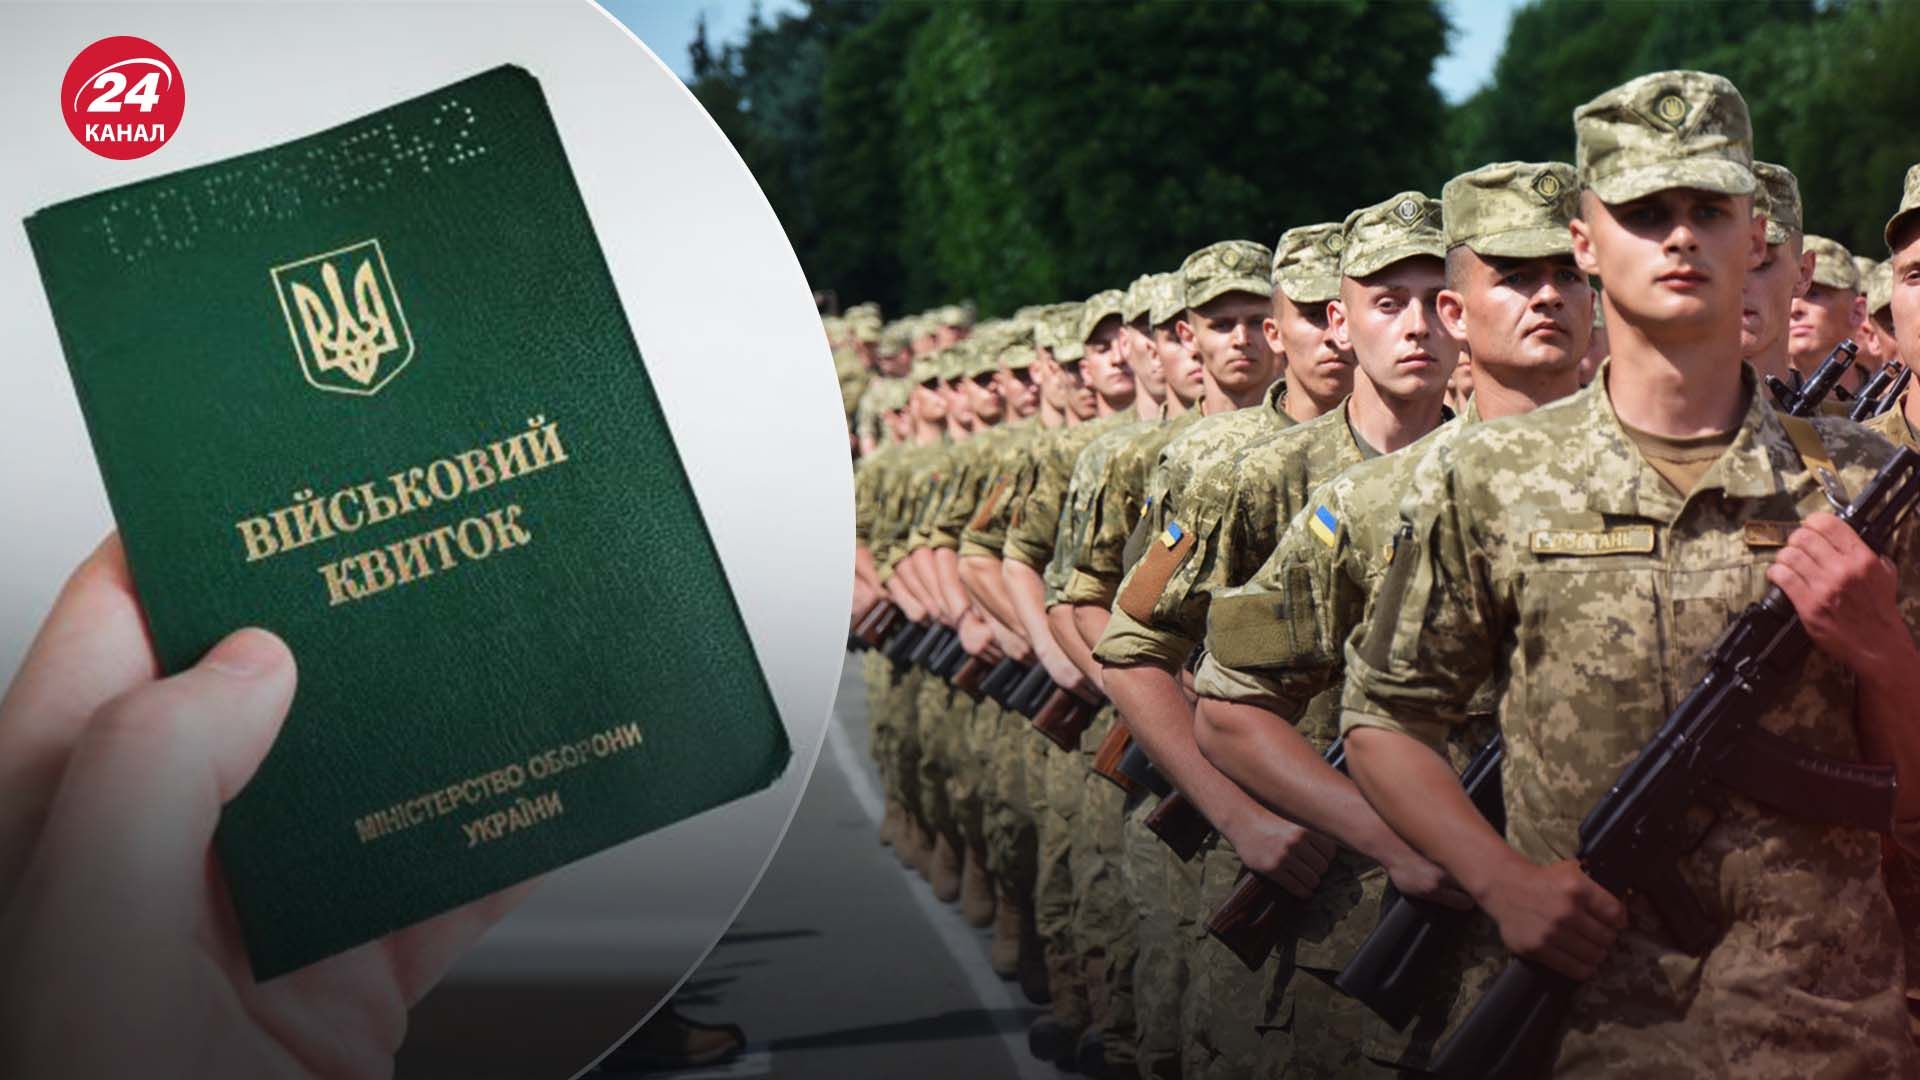  Снижение призывного возраста в Украине - как это повлияет на армию - 24 Канал